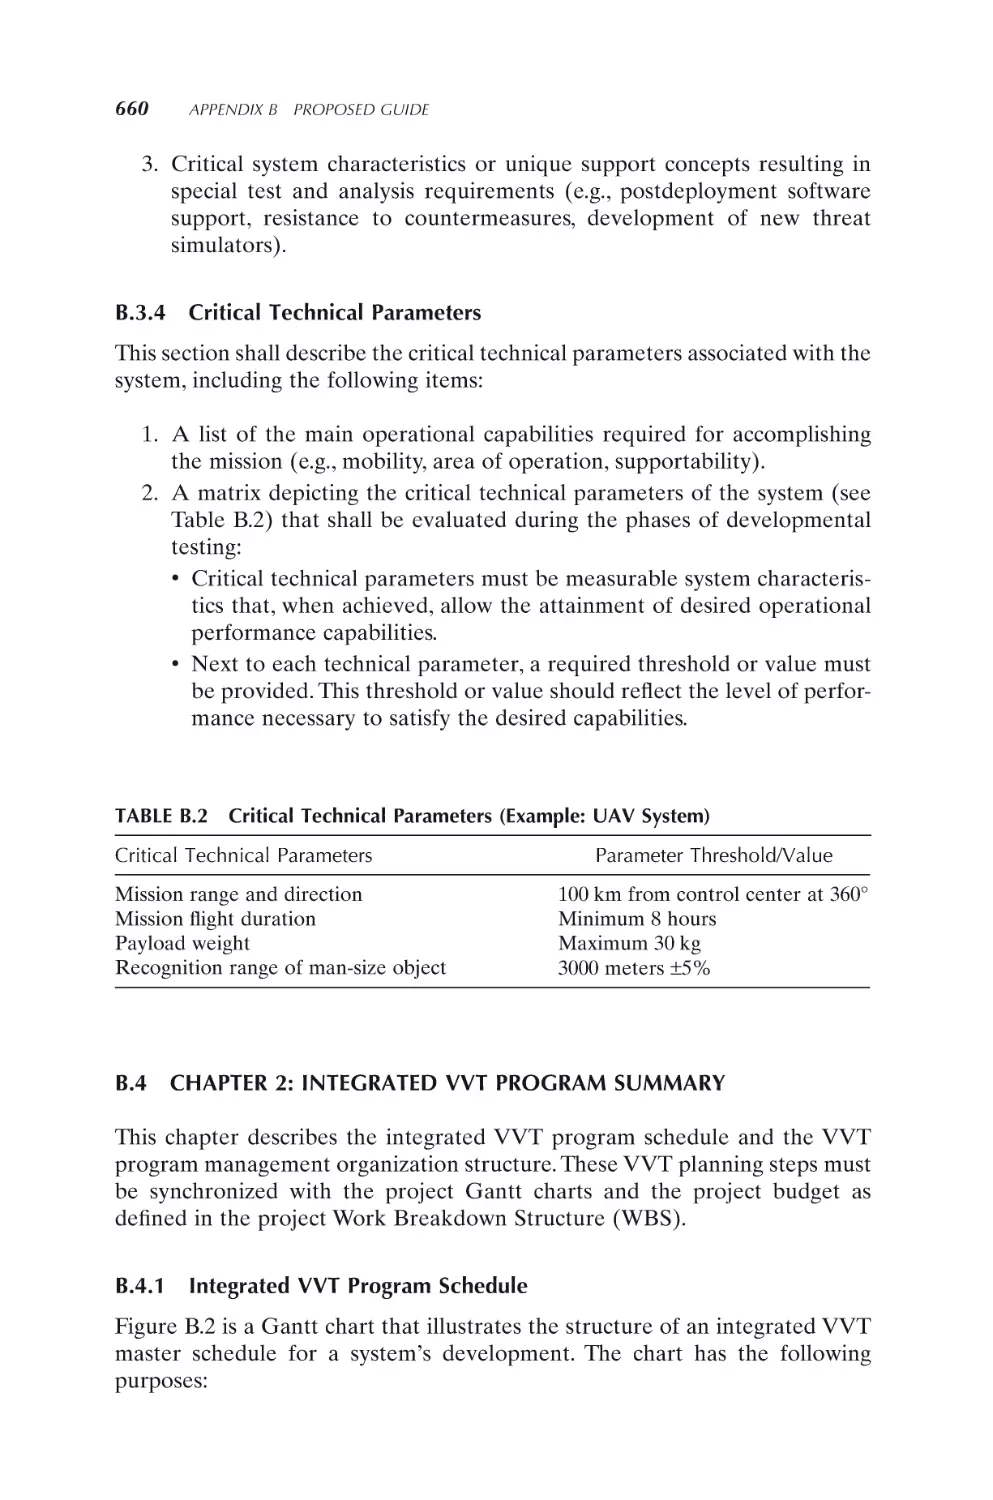 B.3.4 Critical Technical Parameters
B.4 CHAPTER 2
B.4.1 Integrated VVT Program Schedule